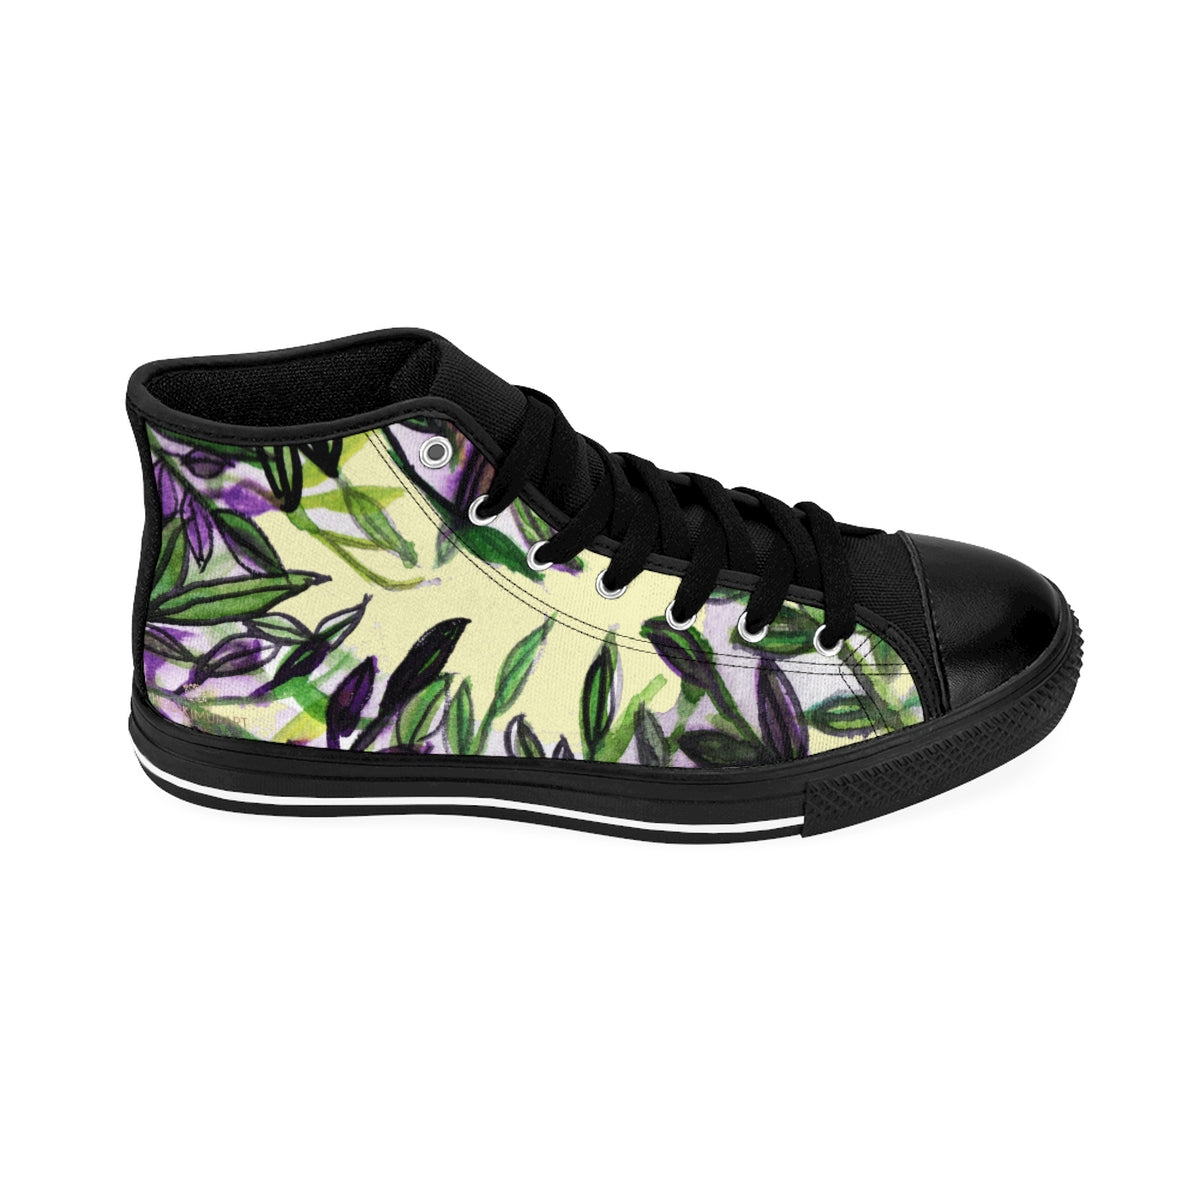 Light Yellow Green Tropical Leaf Print Designer Men's High-top Sneakers Tennis Shoes-Men's High Top Sneakers-Black-US 9-Heidi Kimura Art LLC